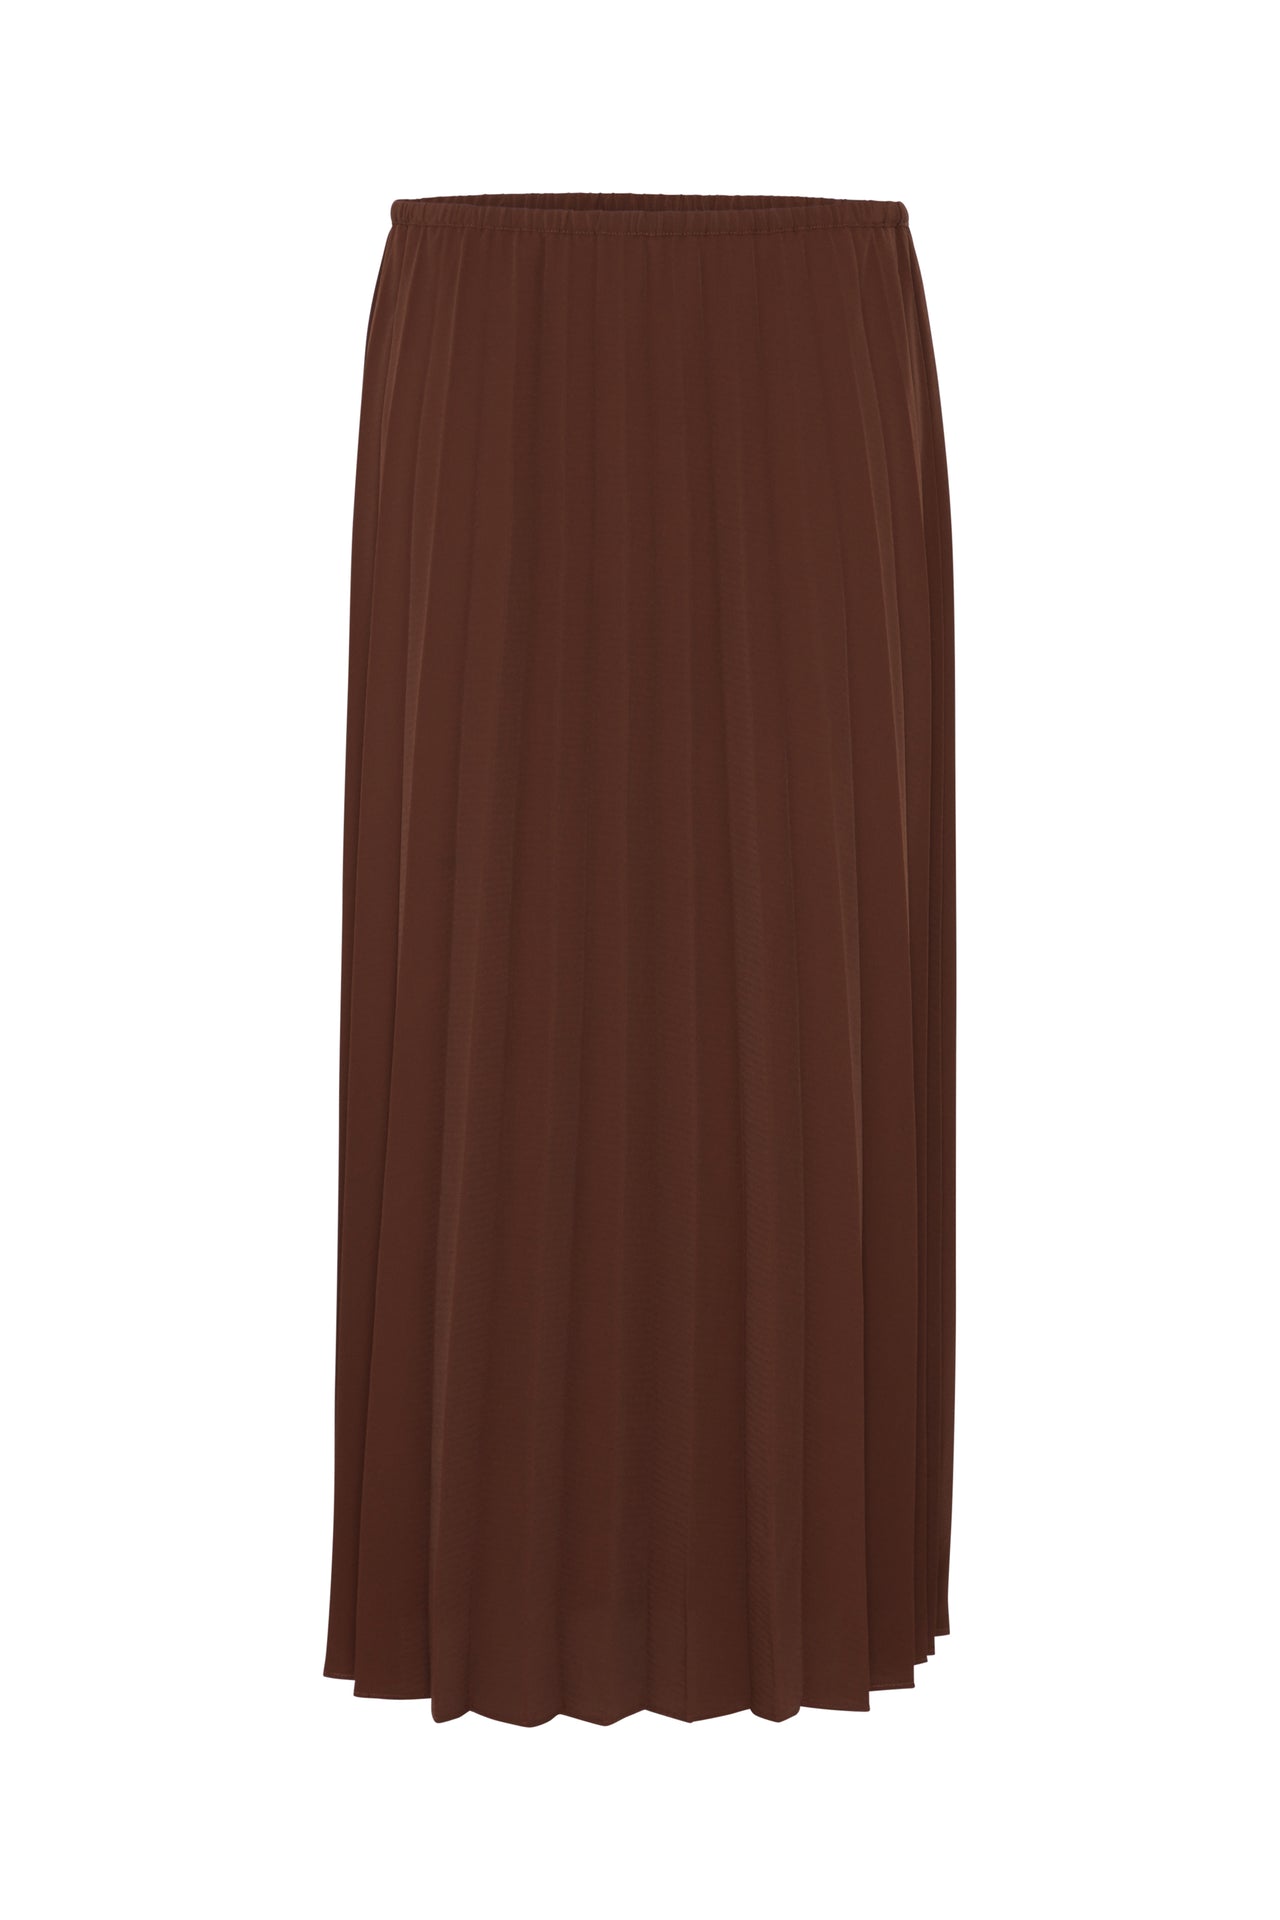 B Young DESON Chicory Coffee Skirt